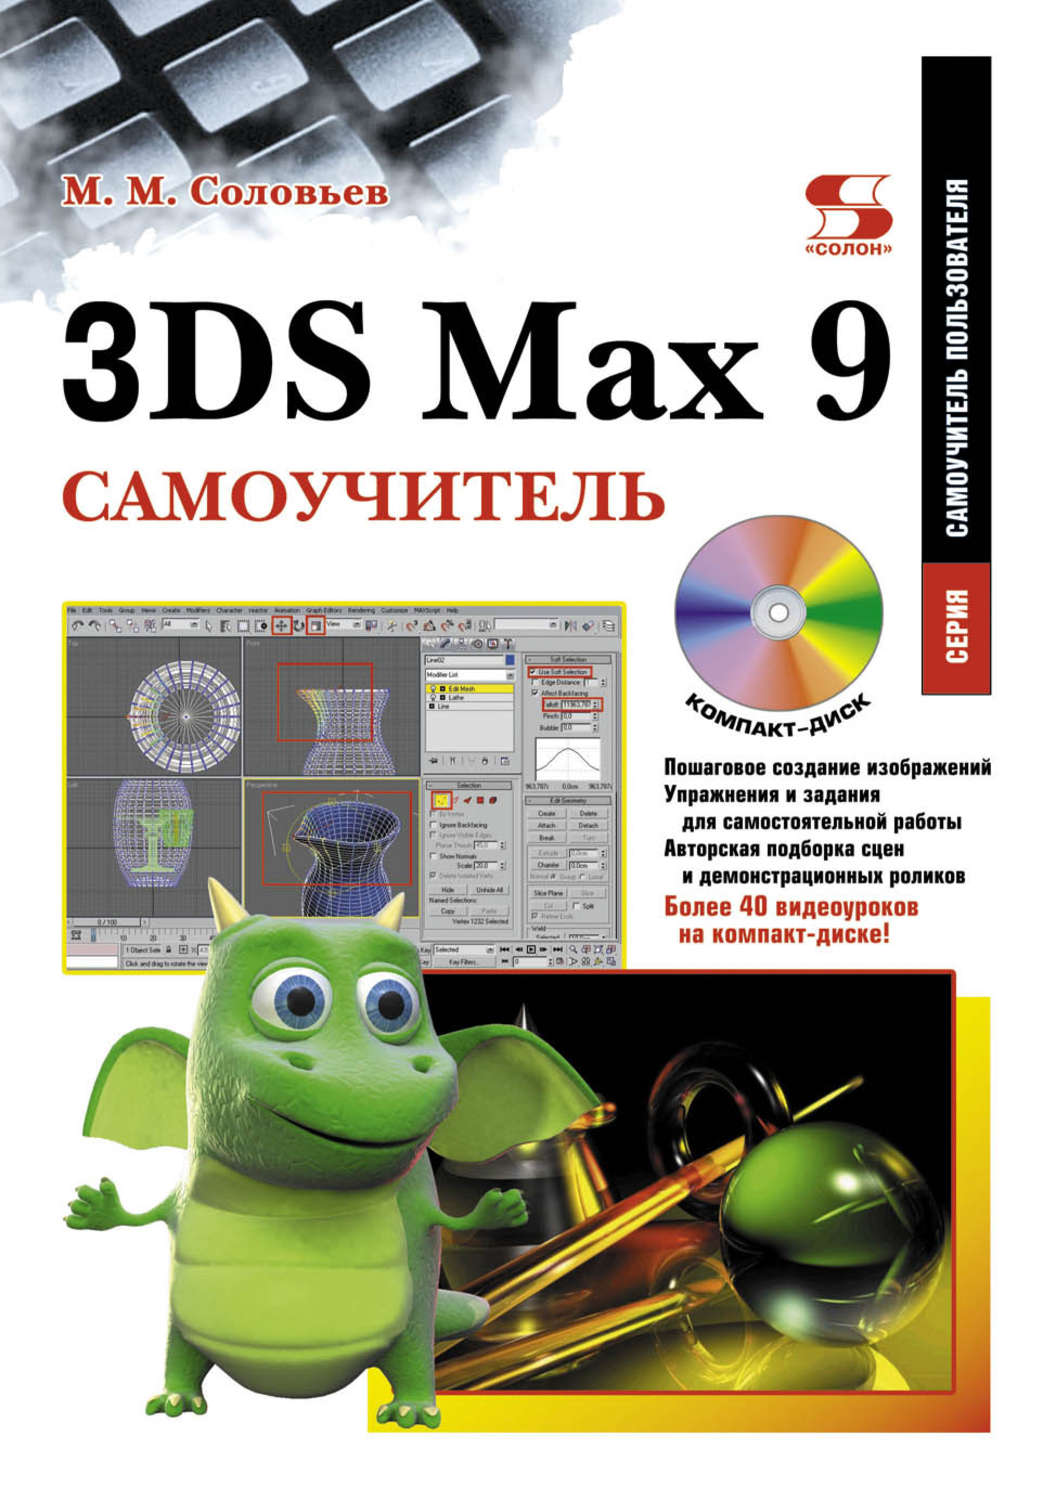 3ds max 9 самоучитель скачать pdf